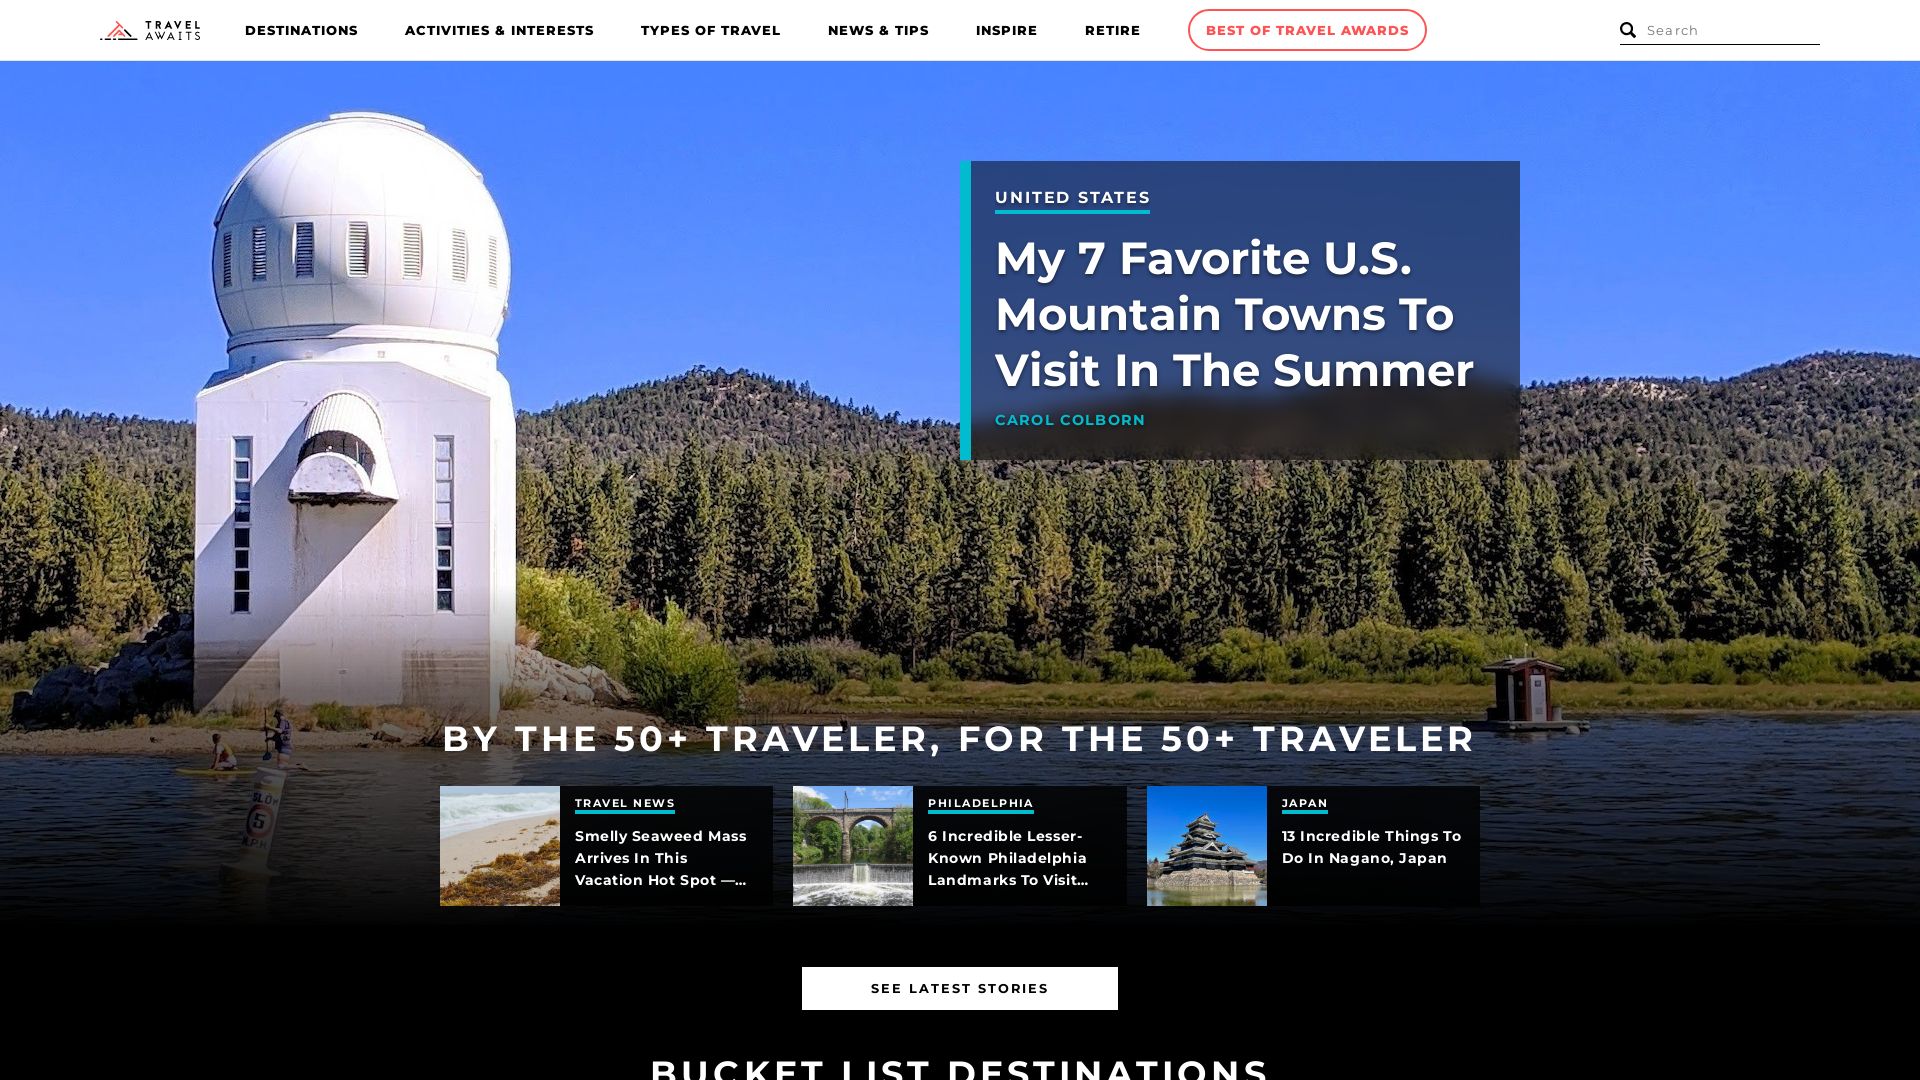 Website status travelawaits.com is   ONLINE